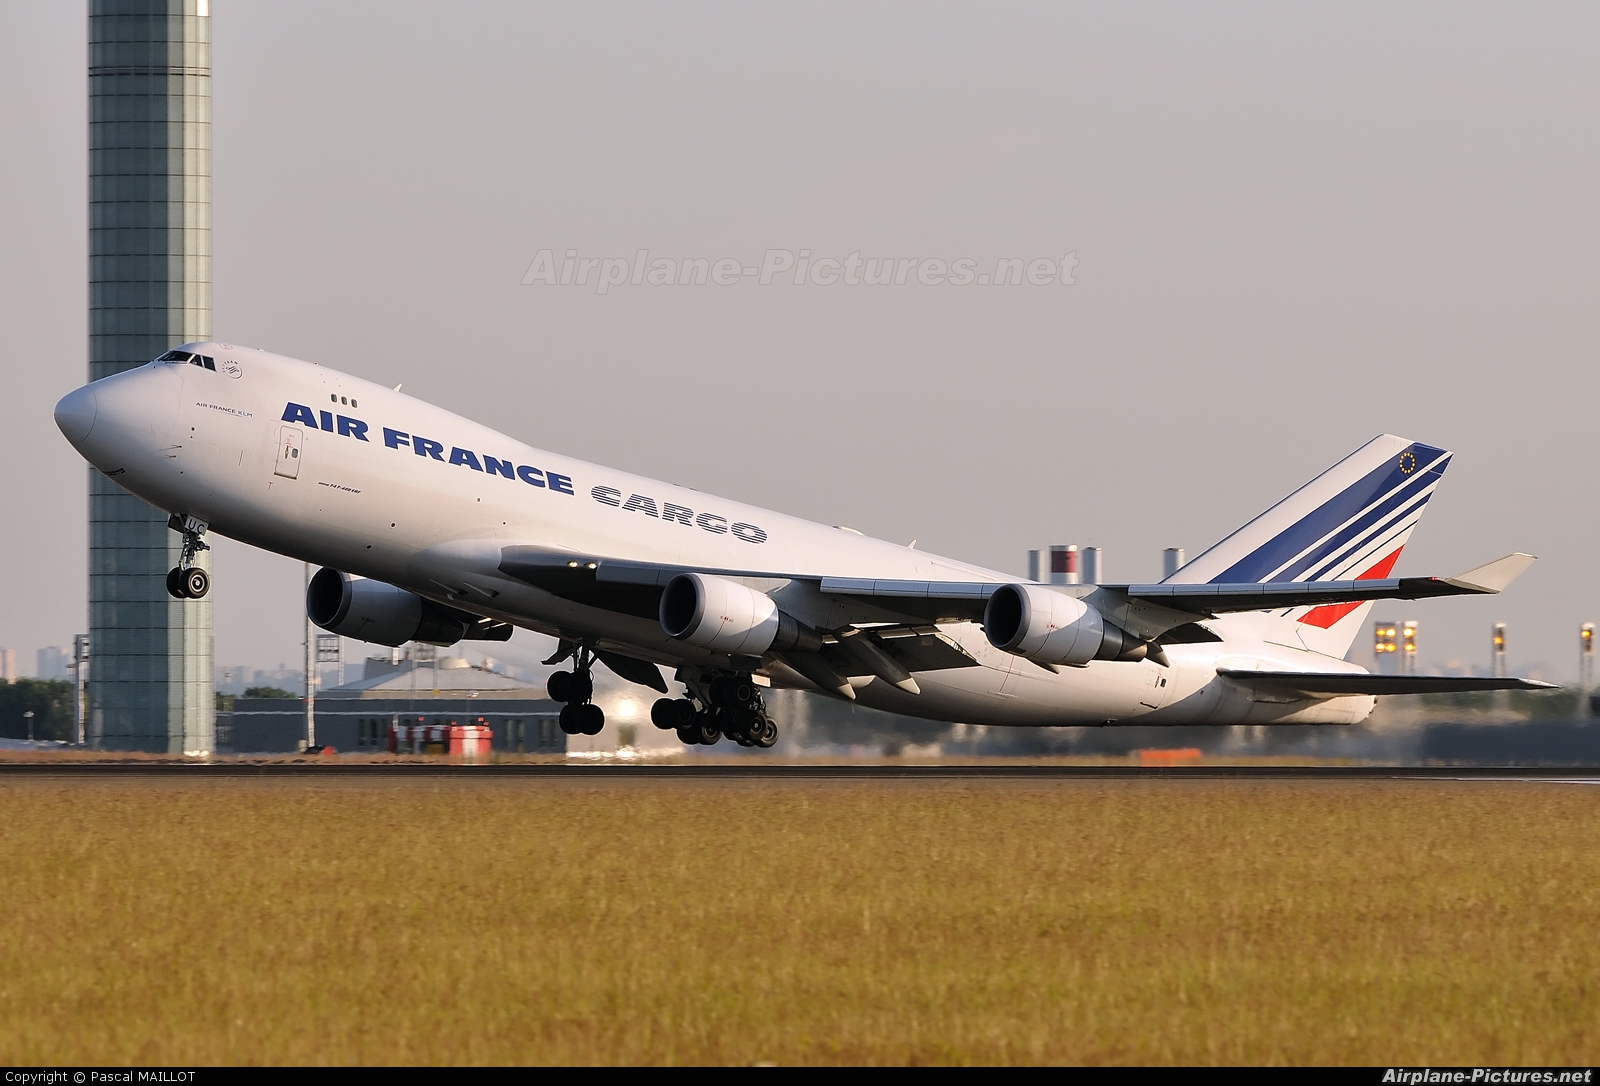 Air France Cargo F-GIUC aircraft at Paris - Charles de Gaulle